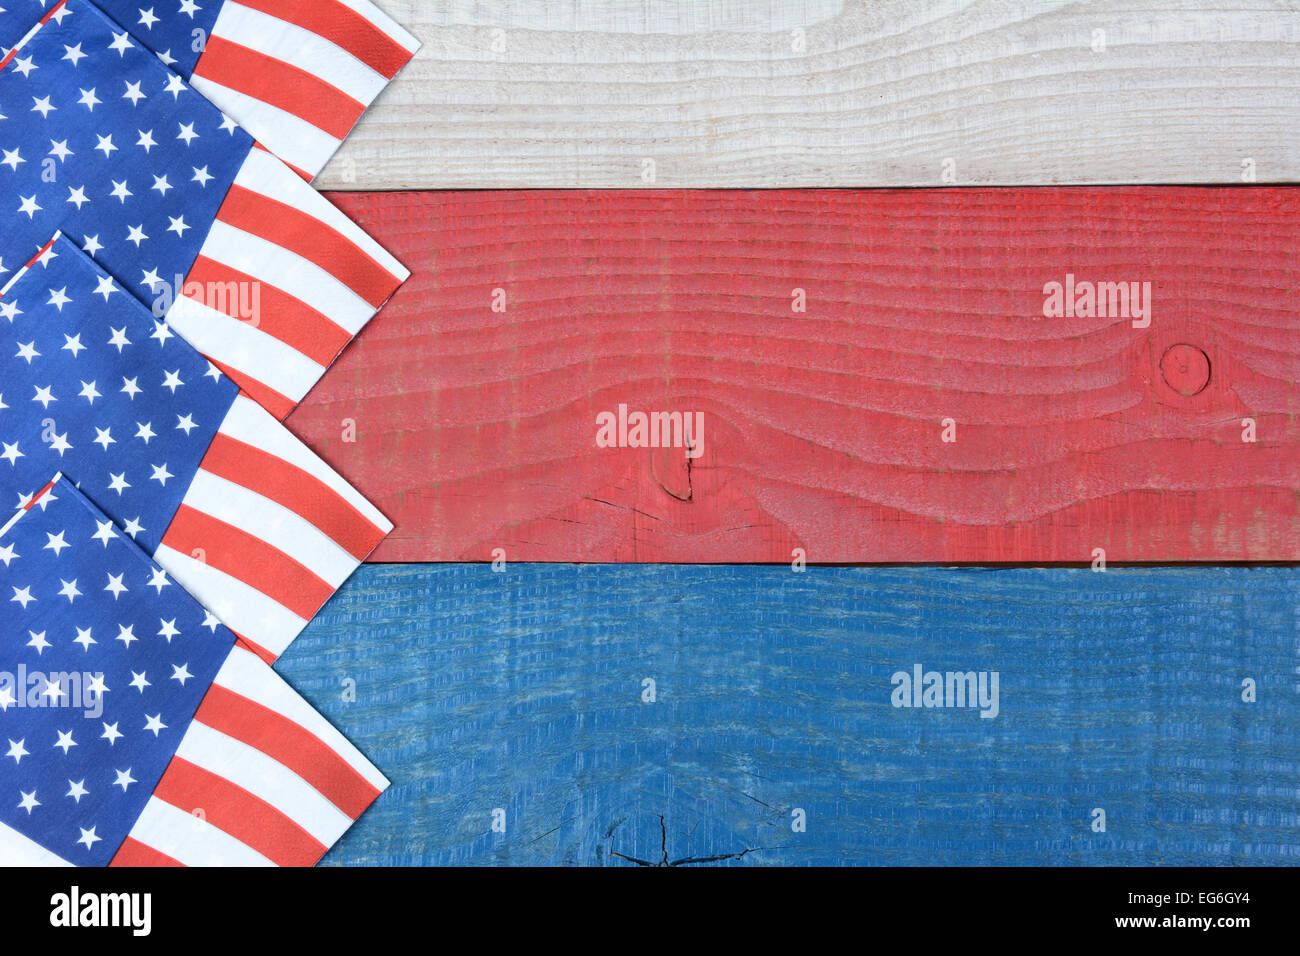 Coup de frais généraux de drapeau américain serviettes étalent sur le rouge, blanc et bleu table de pique-nique. Format horizontal avec l'exemplaire de l'espace. Répondre à Banque D'Images